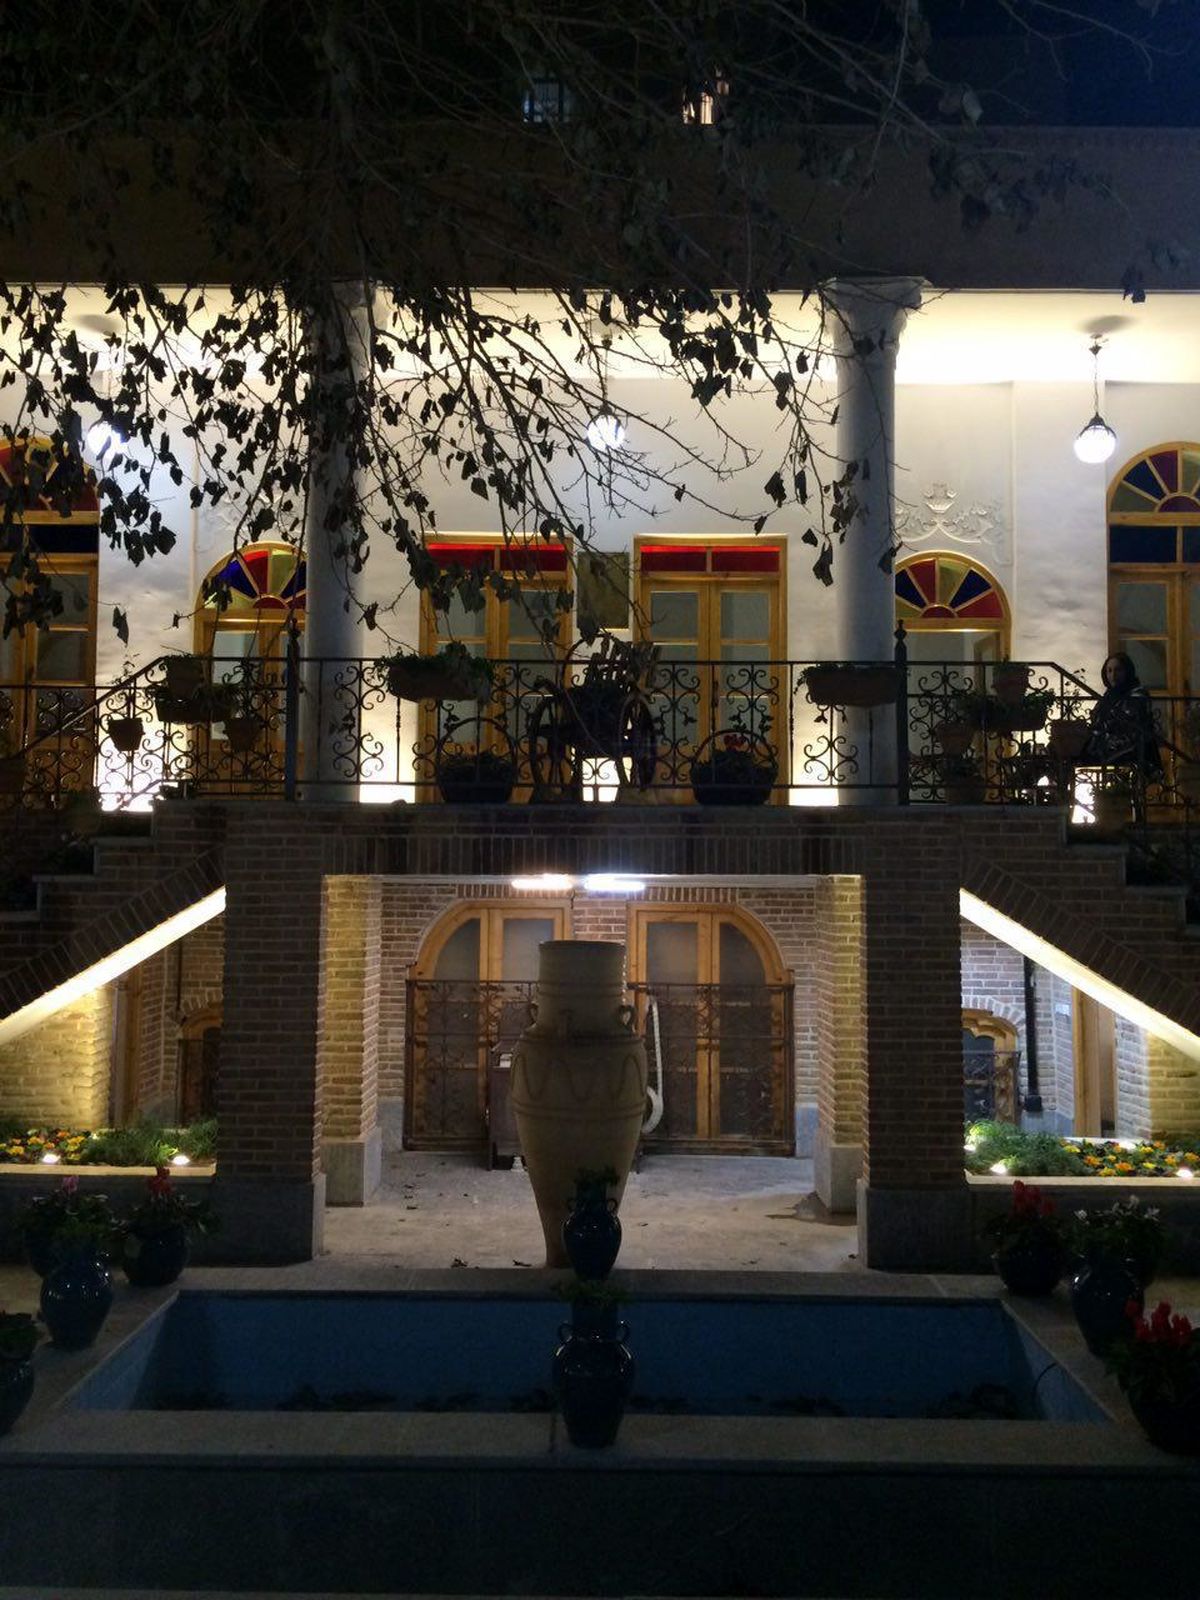 خانه فراغت دبیرالملک افتتاح میشود